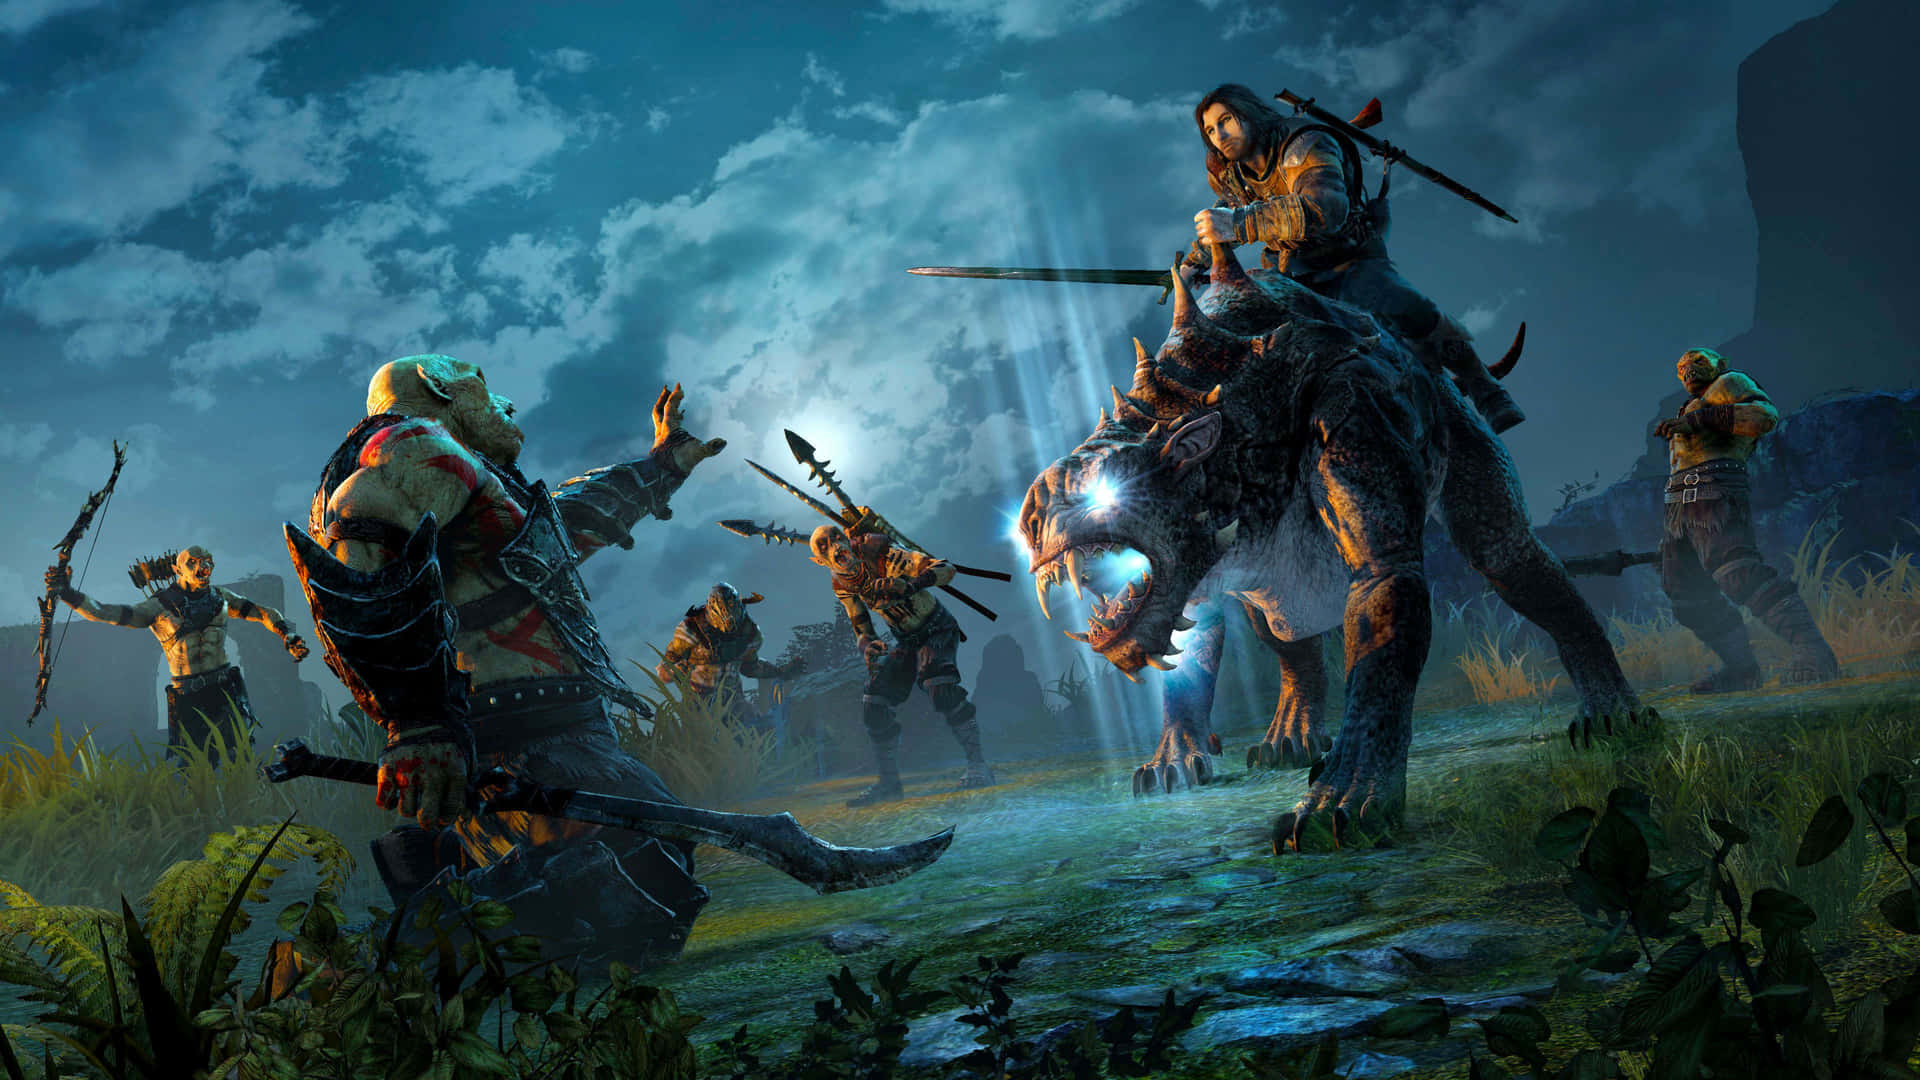 Epic Battles Await in 4K Resolution - Shadow of War Background